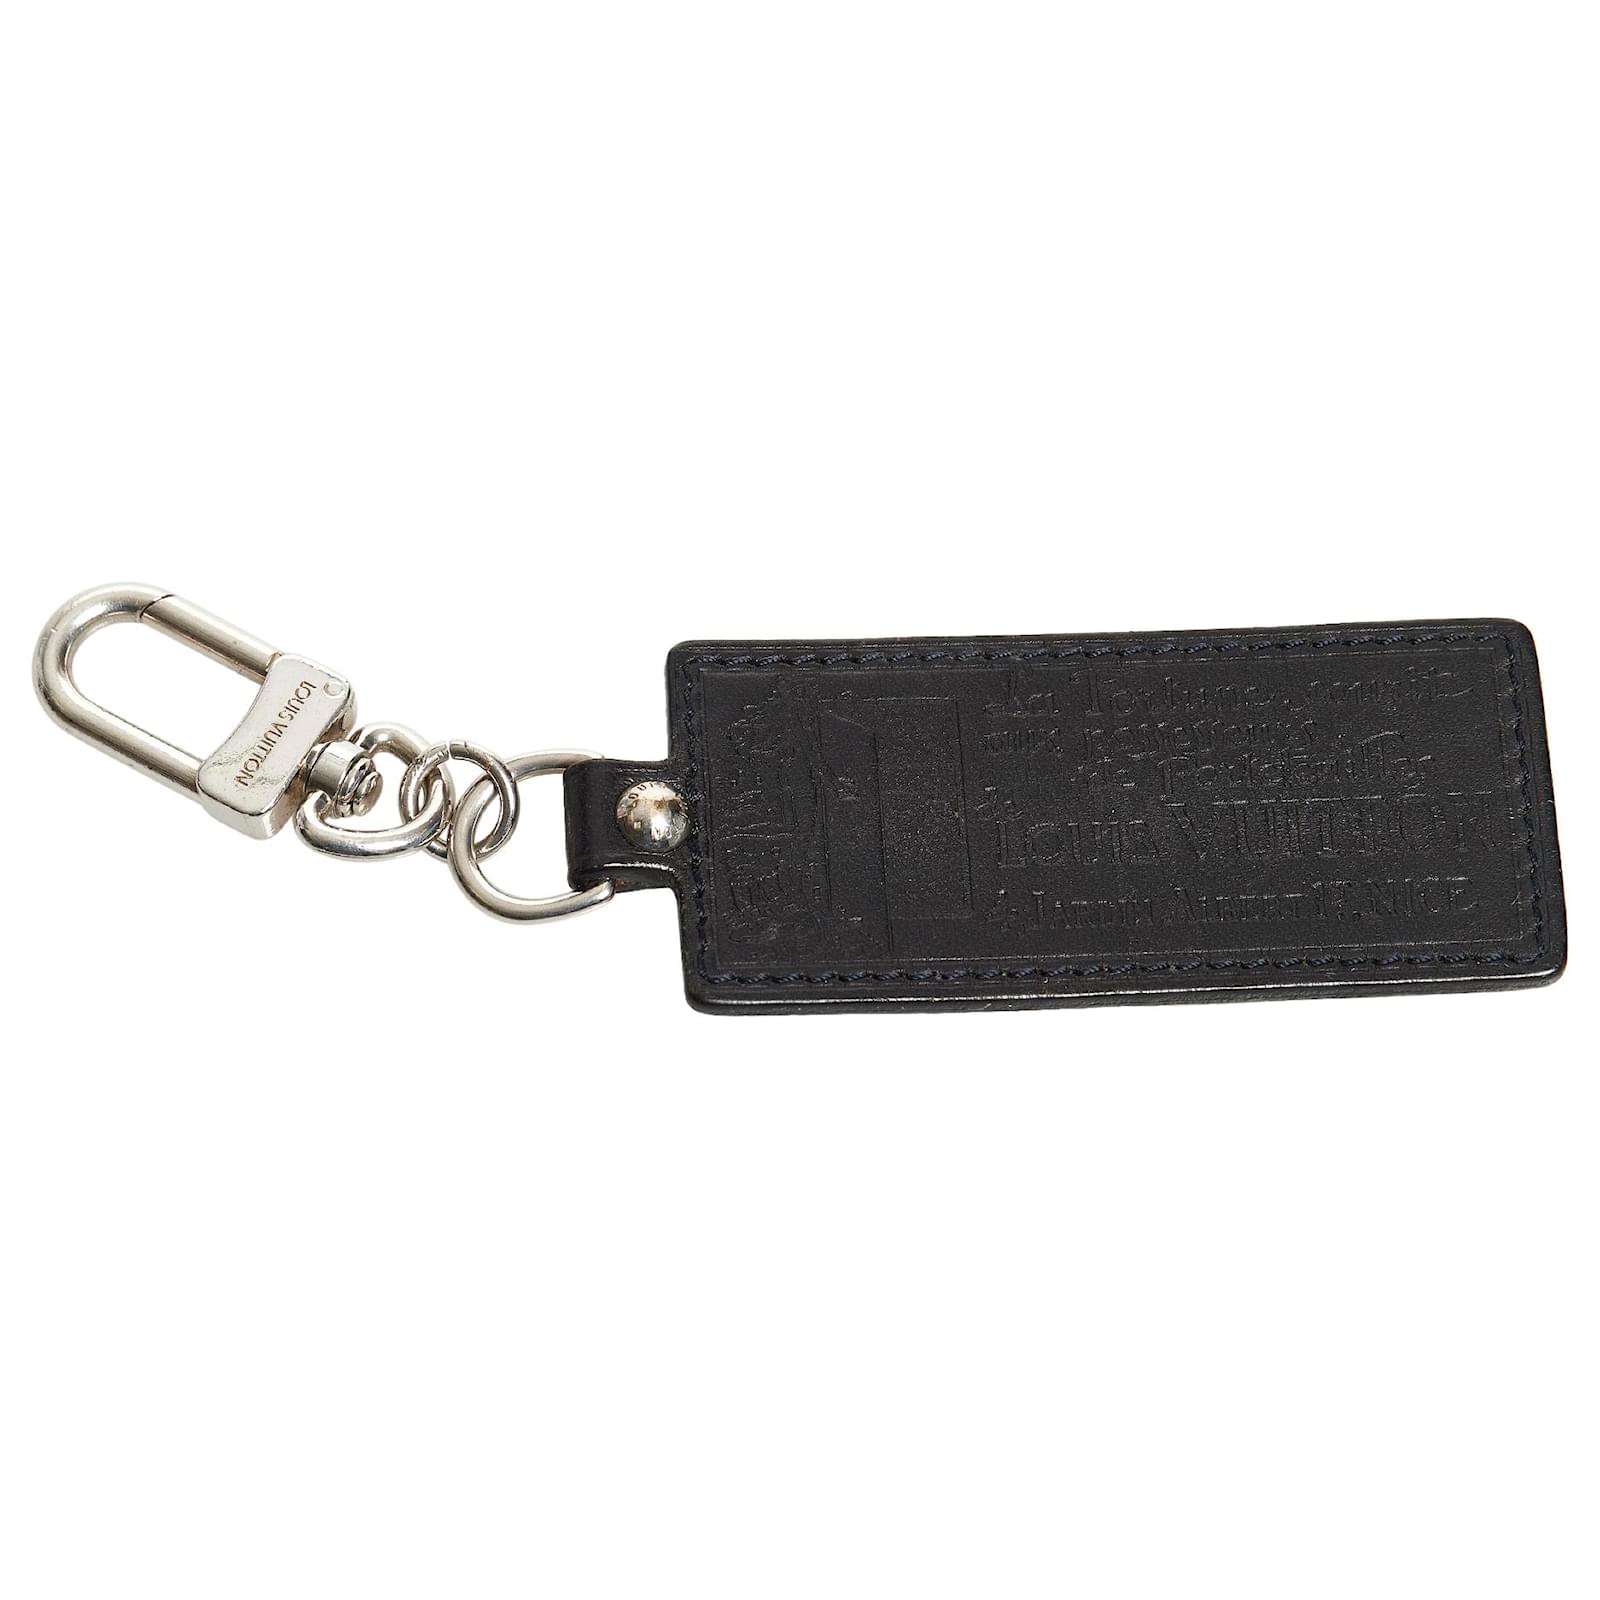 LOUIS VUITTON Calfskin Monogram Key Ring Chain Bag Charm Black